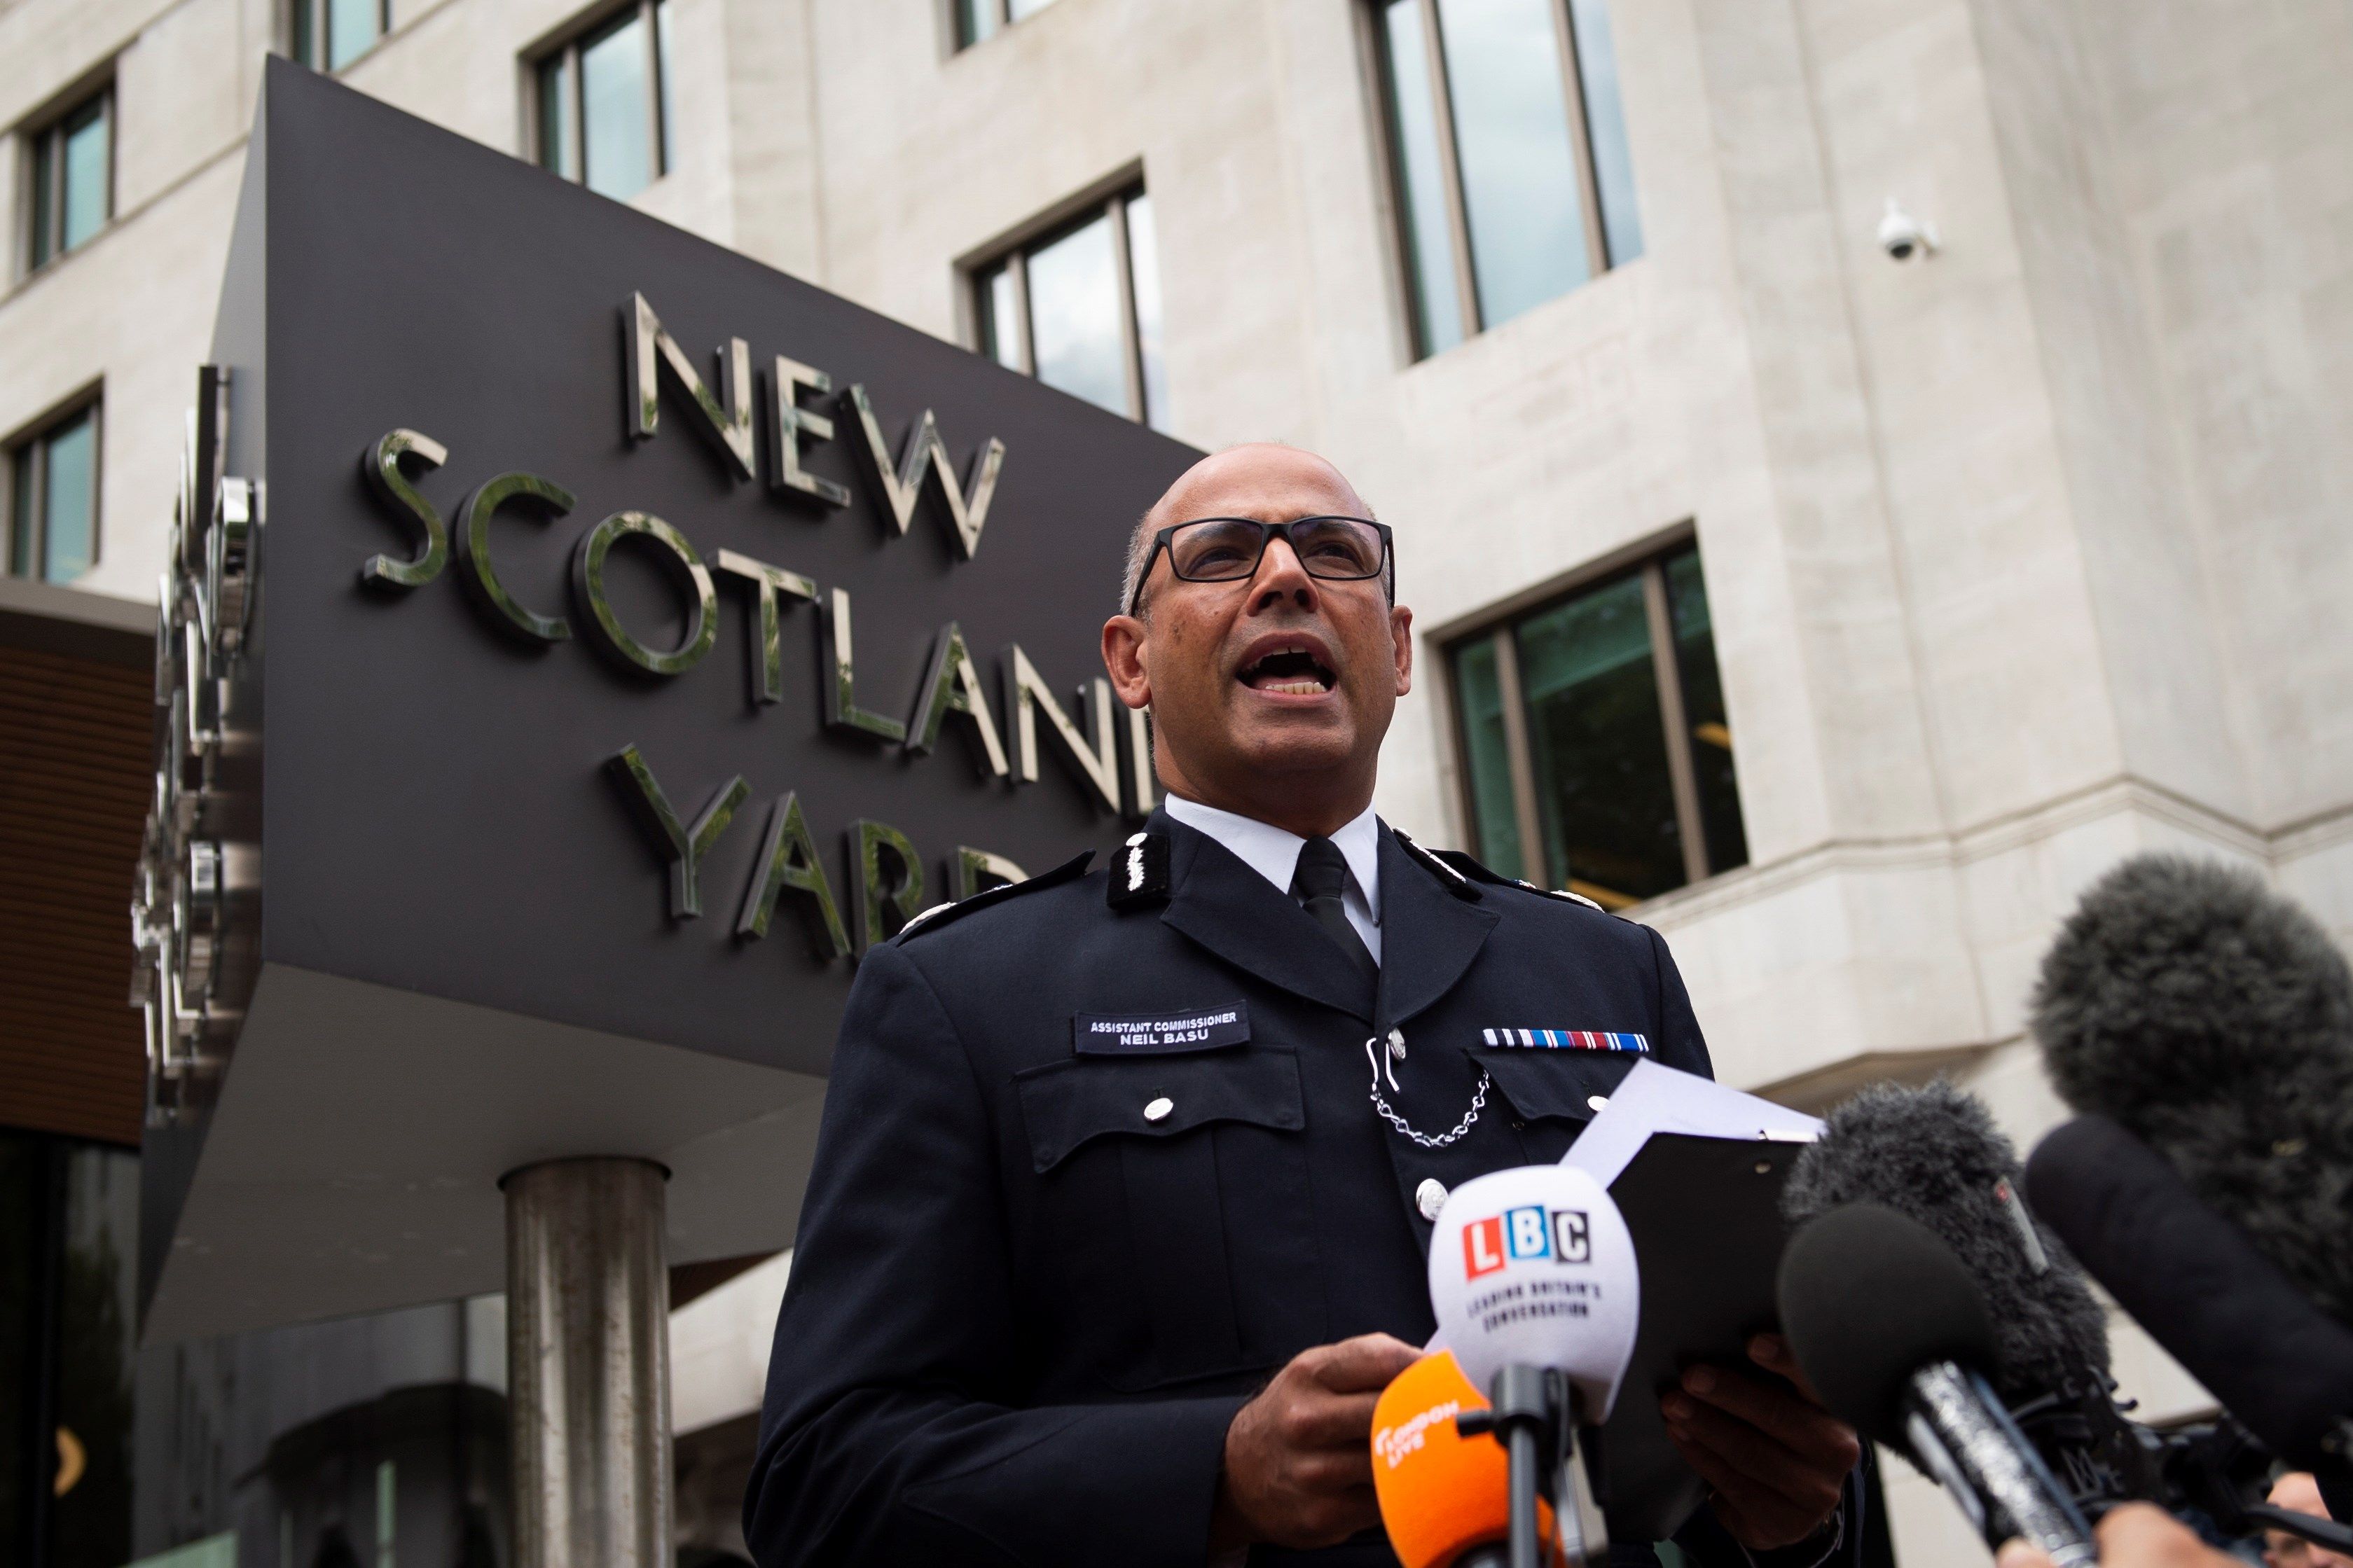 El comisario asistente de la Policía Metropolitana de Londres Neil Basu lee hoy una declaración ante los medios frente a la sede de Scotland Yard en Londres (Reino Unido). EFE